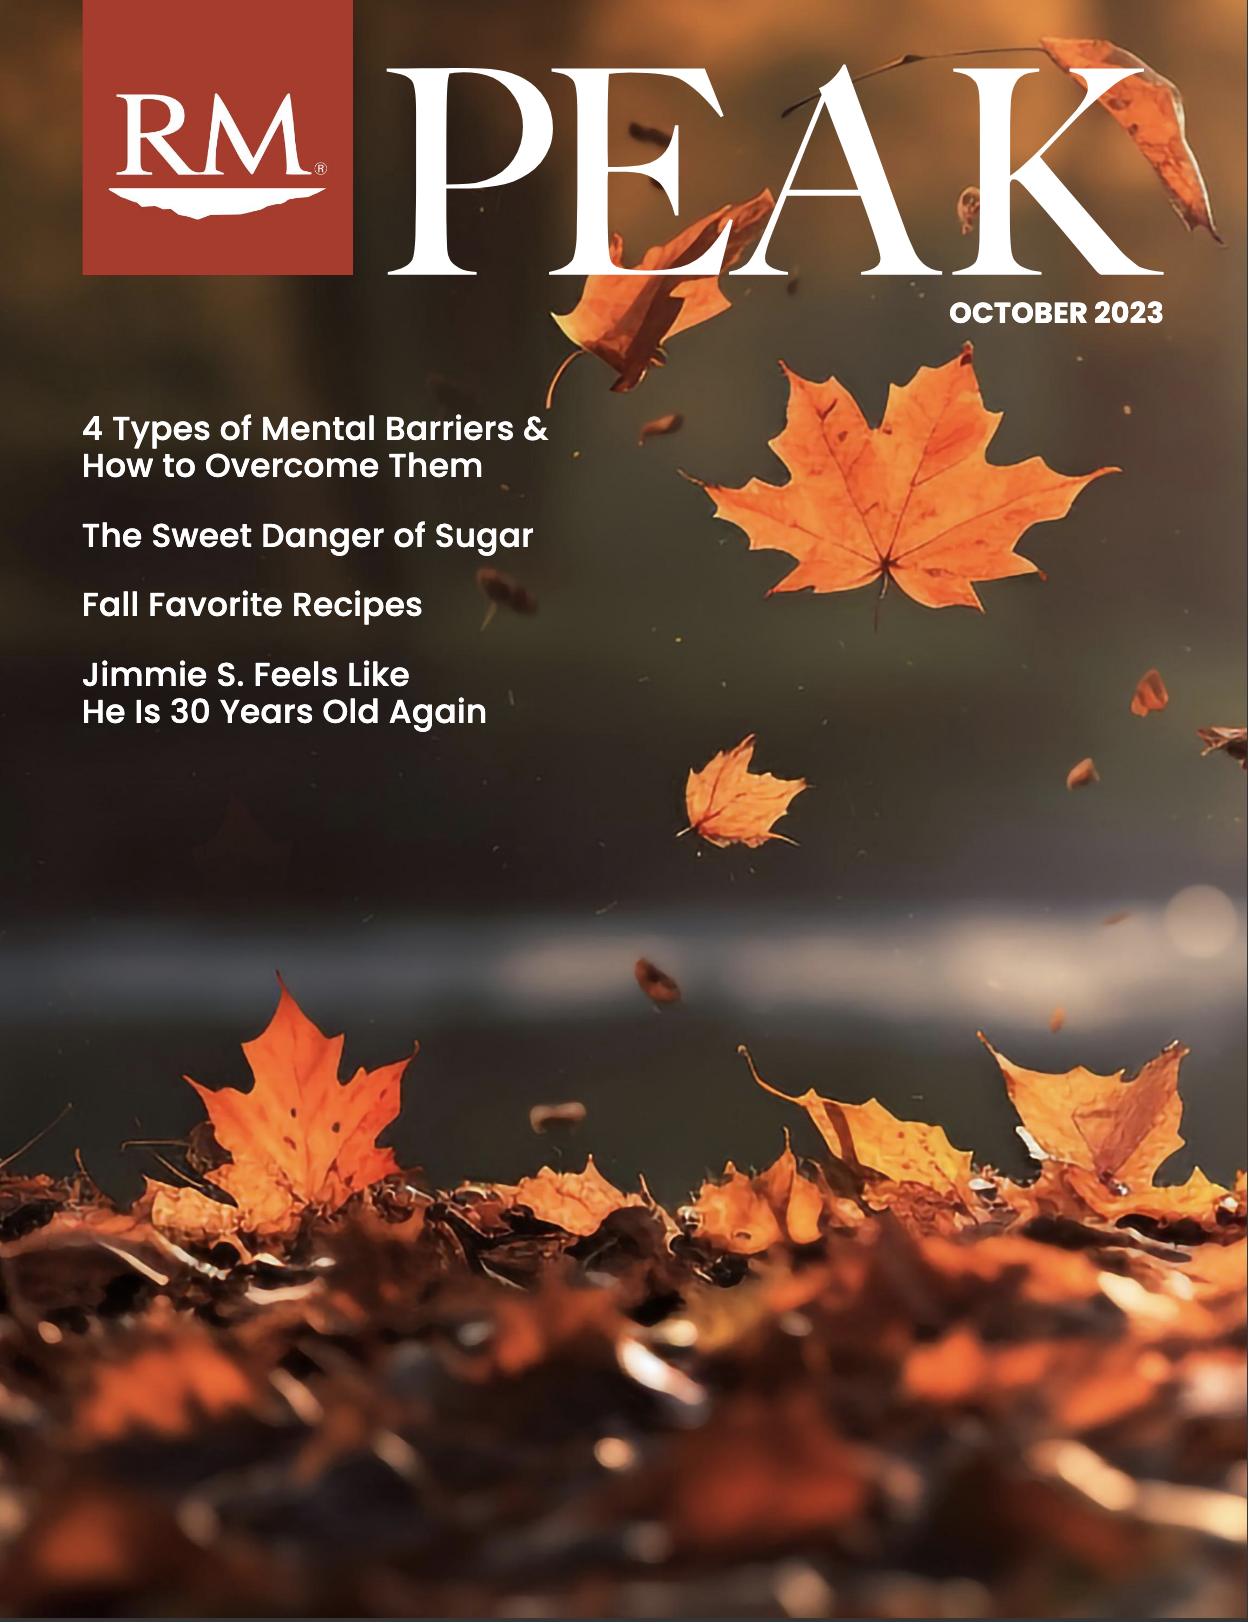 Red Mountain RM Peak October Newsletter